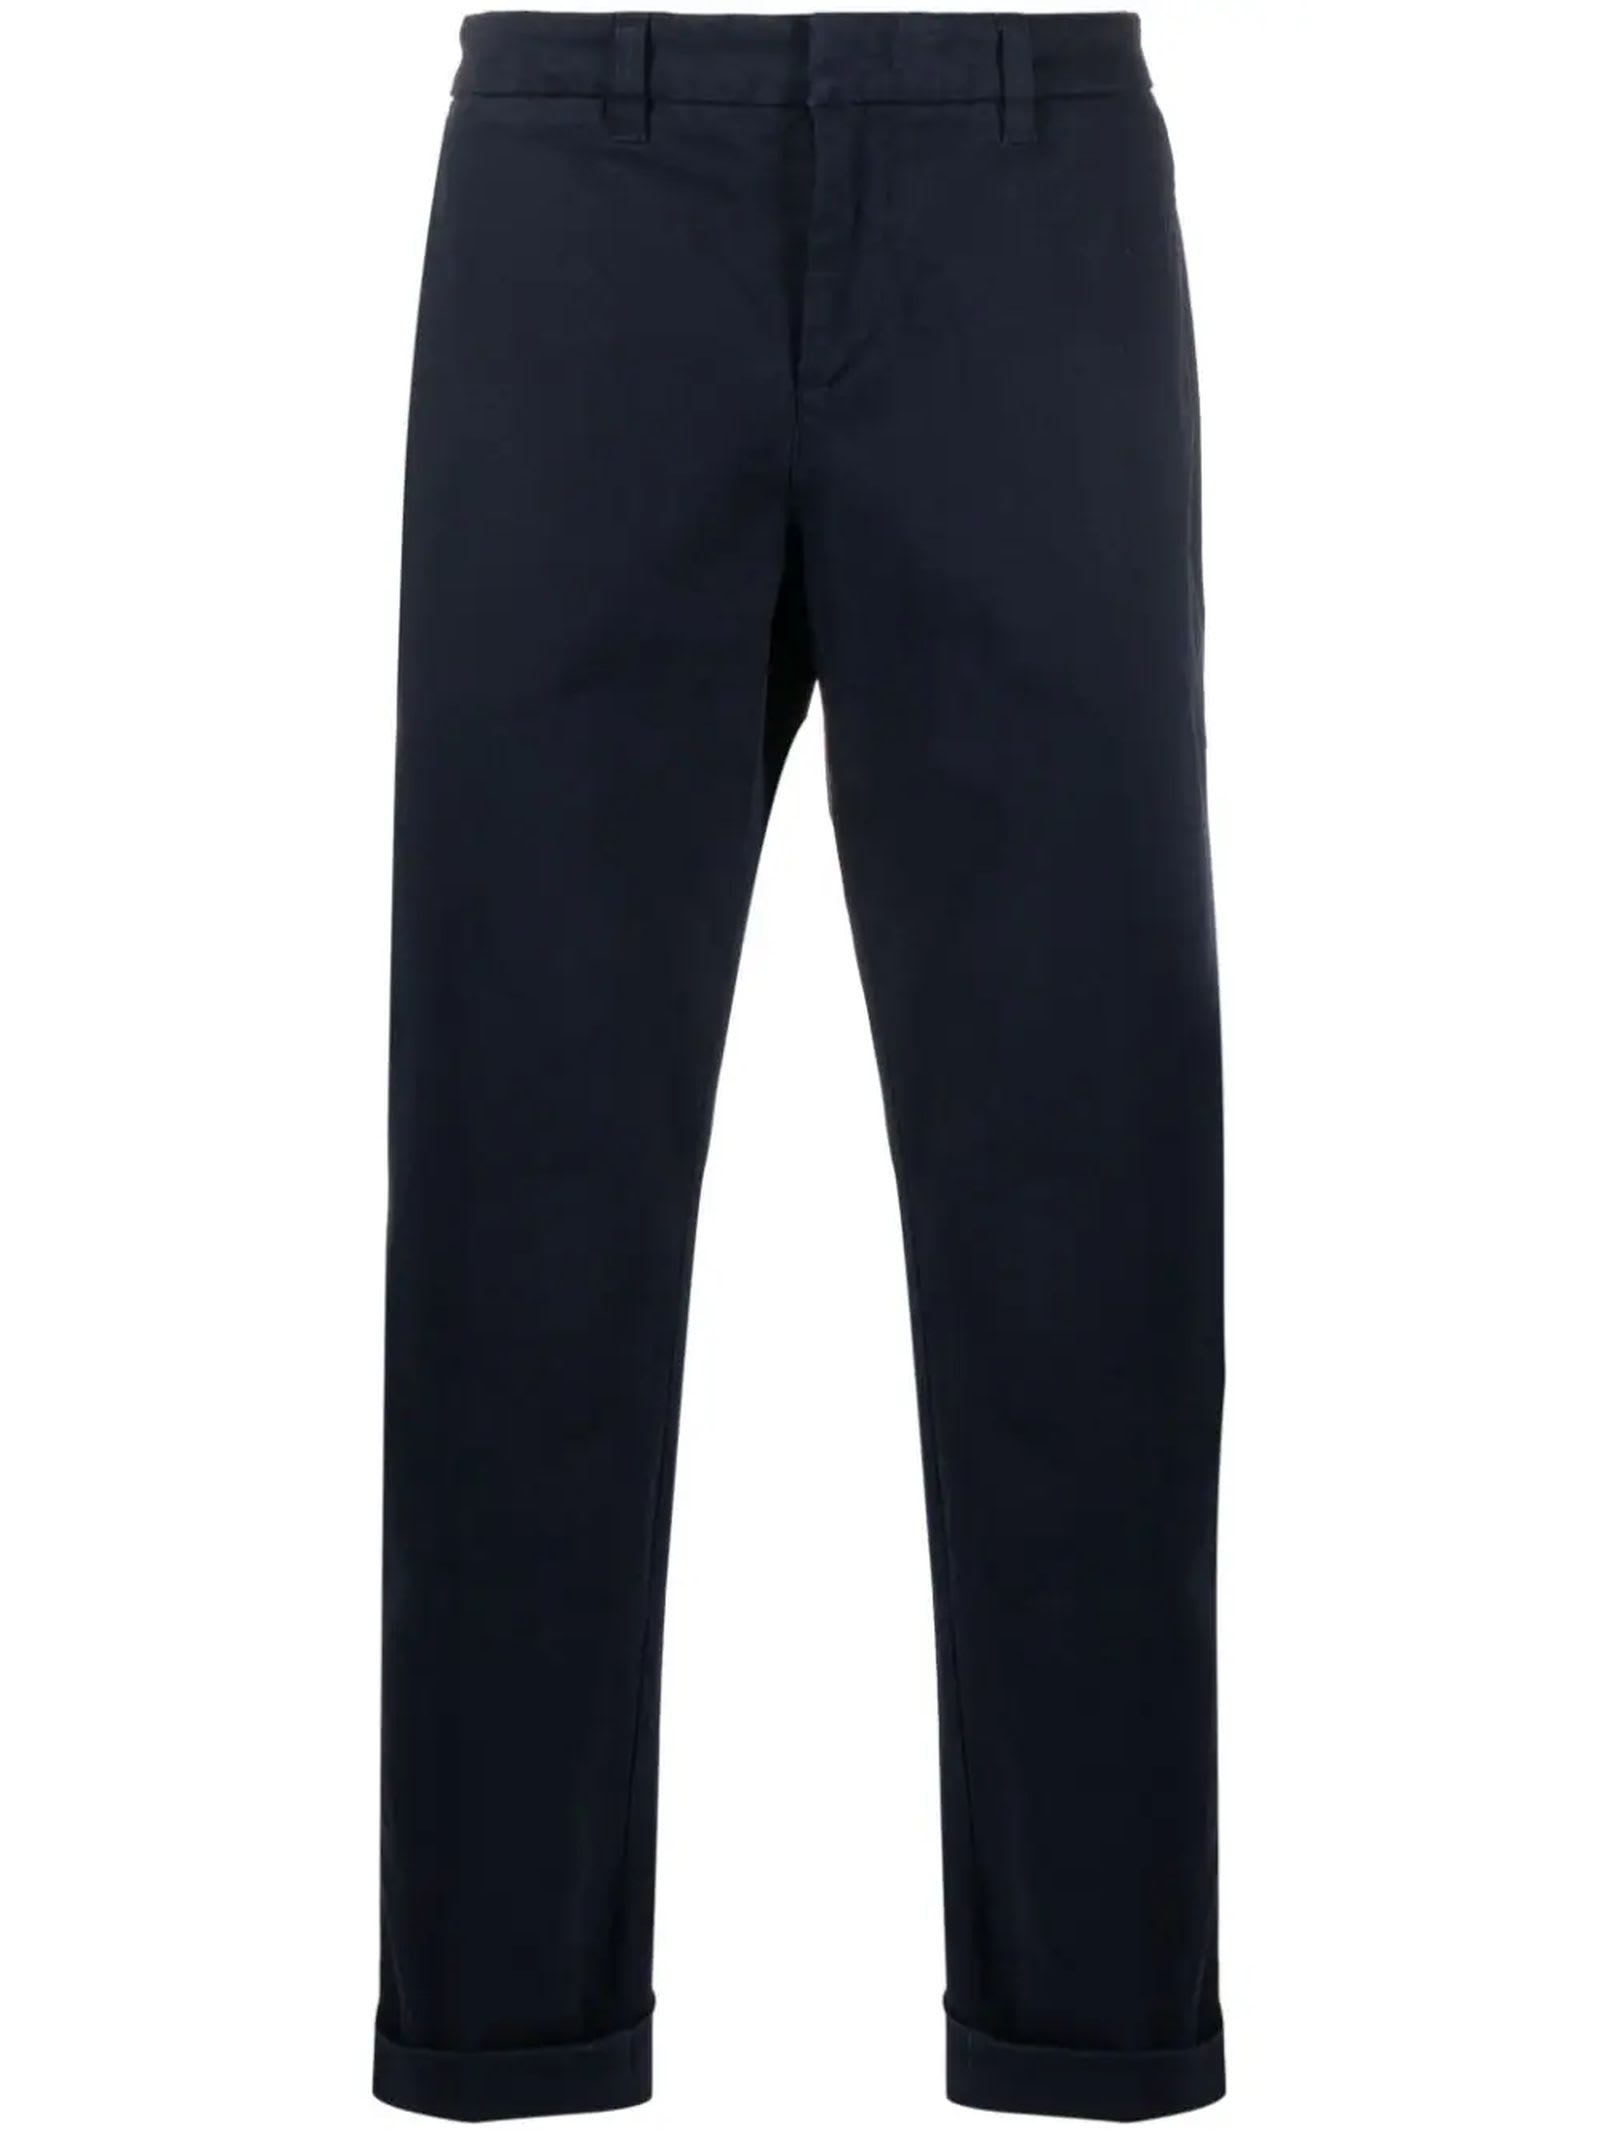 Shop Fay Navy Blue Capri Cotton Trousers